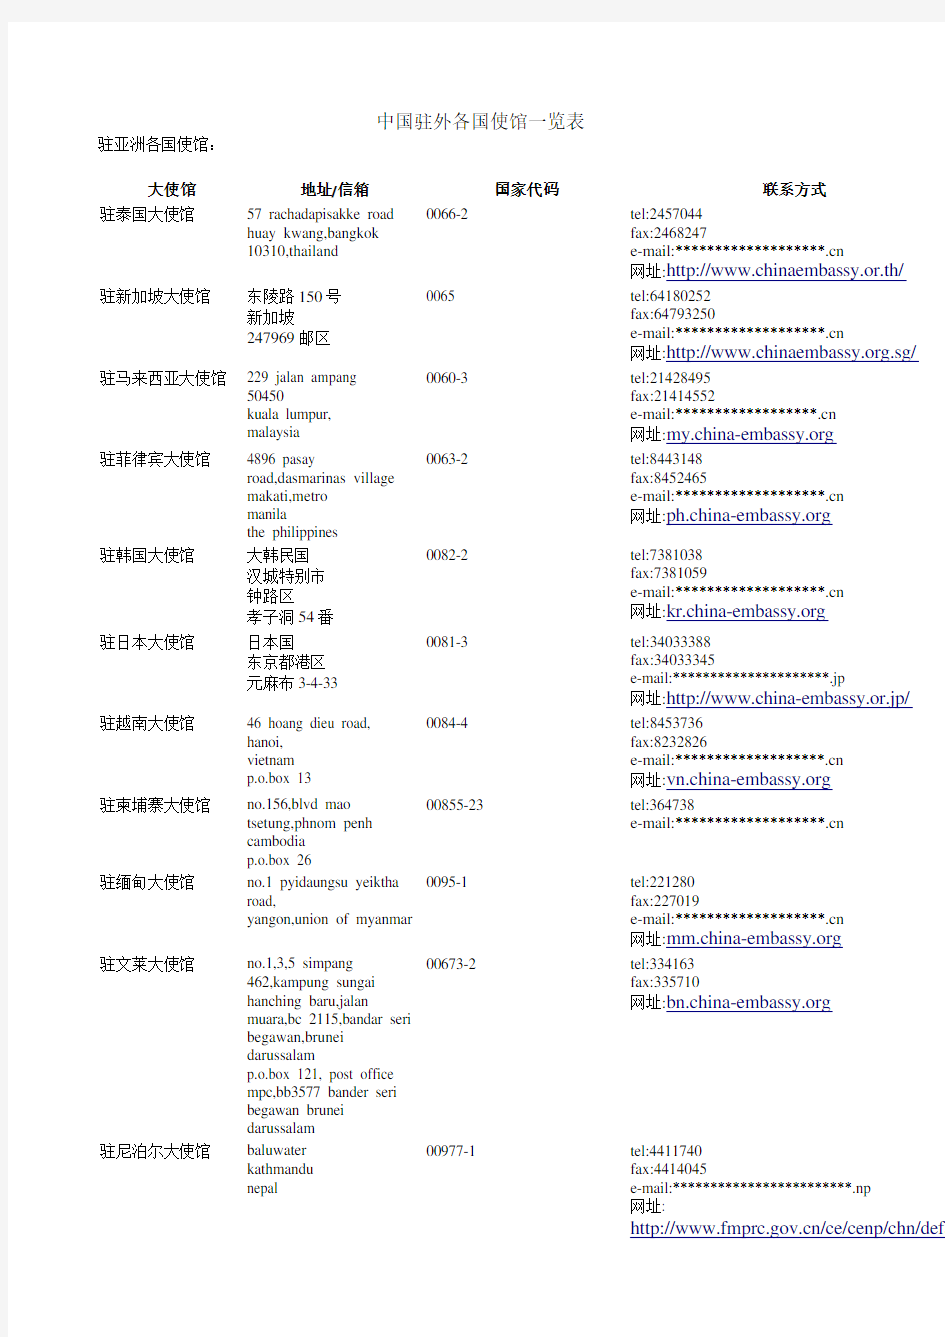 中国驻外各国使馆一览表